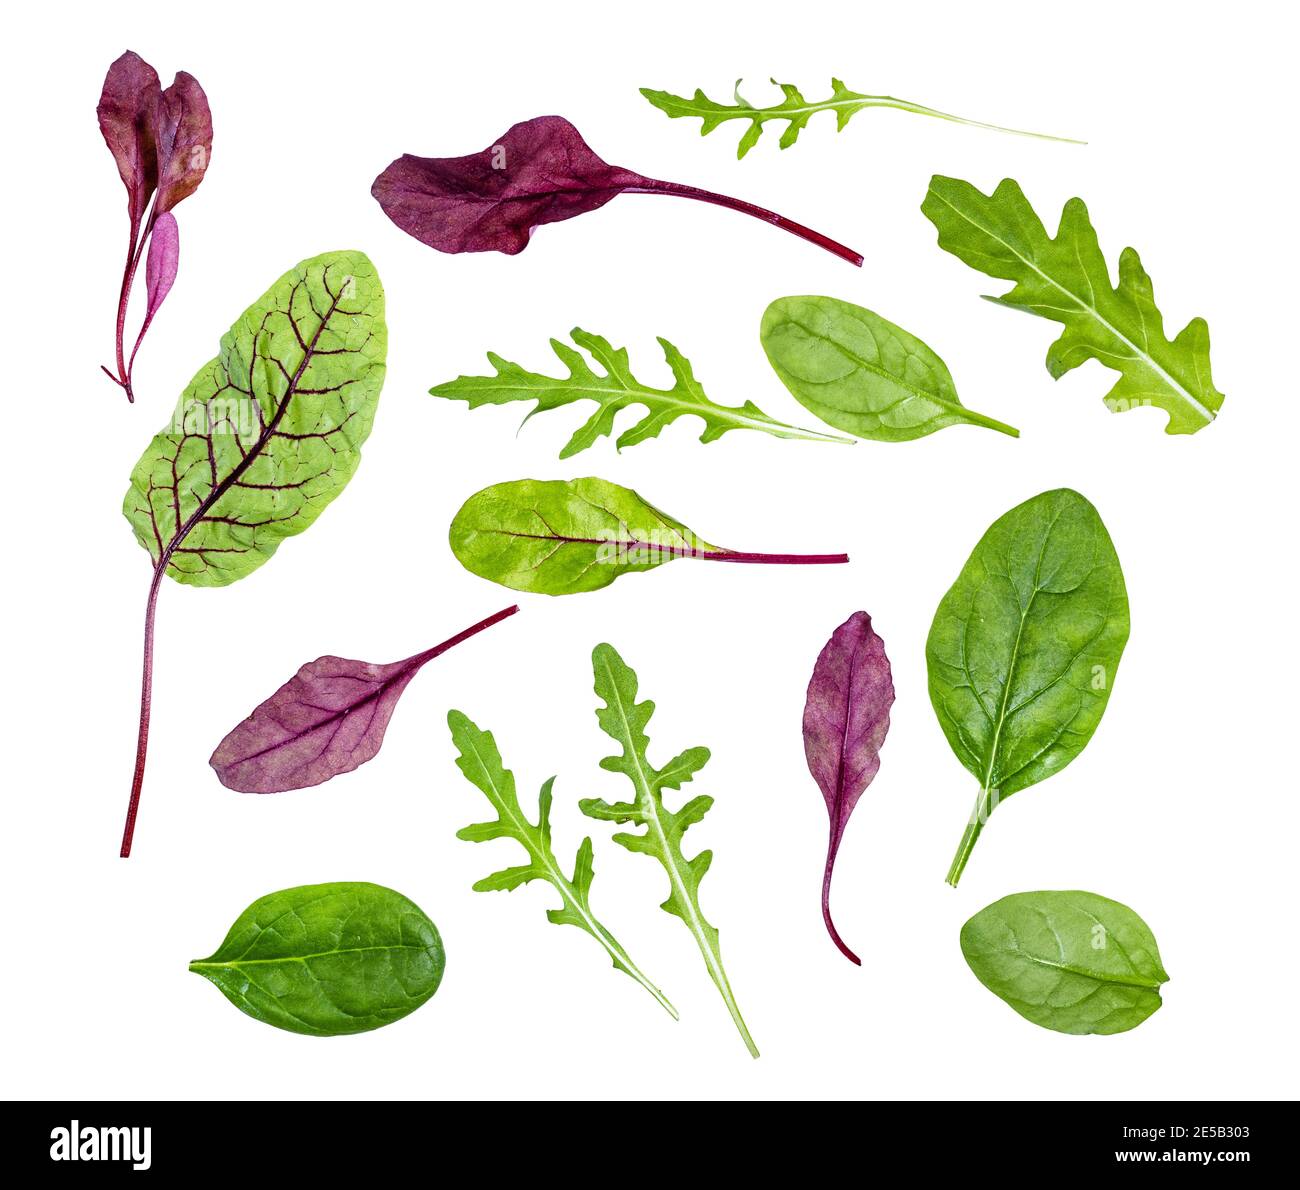 feuilles fraîches de divers légumes à feuilles (verger, épinards, arugula) isolées sur fond blanc Banque D'Images